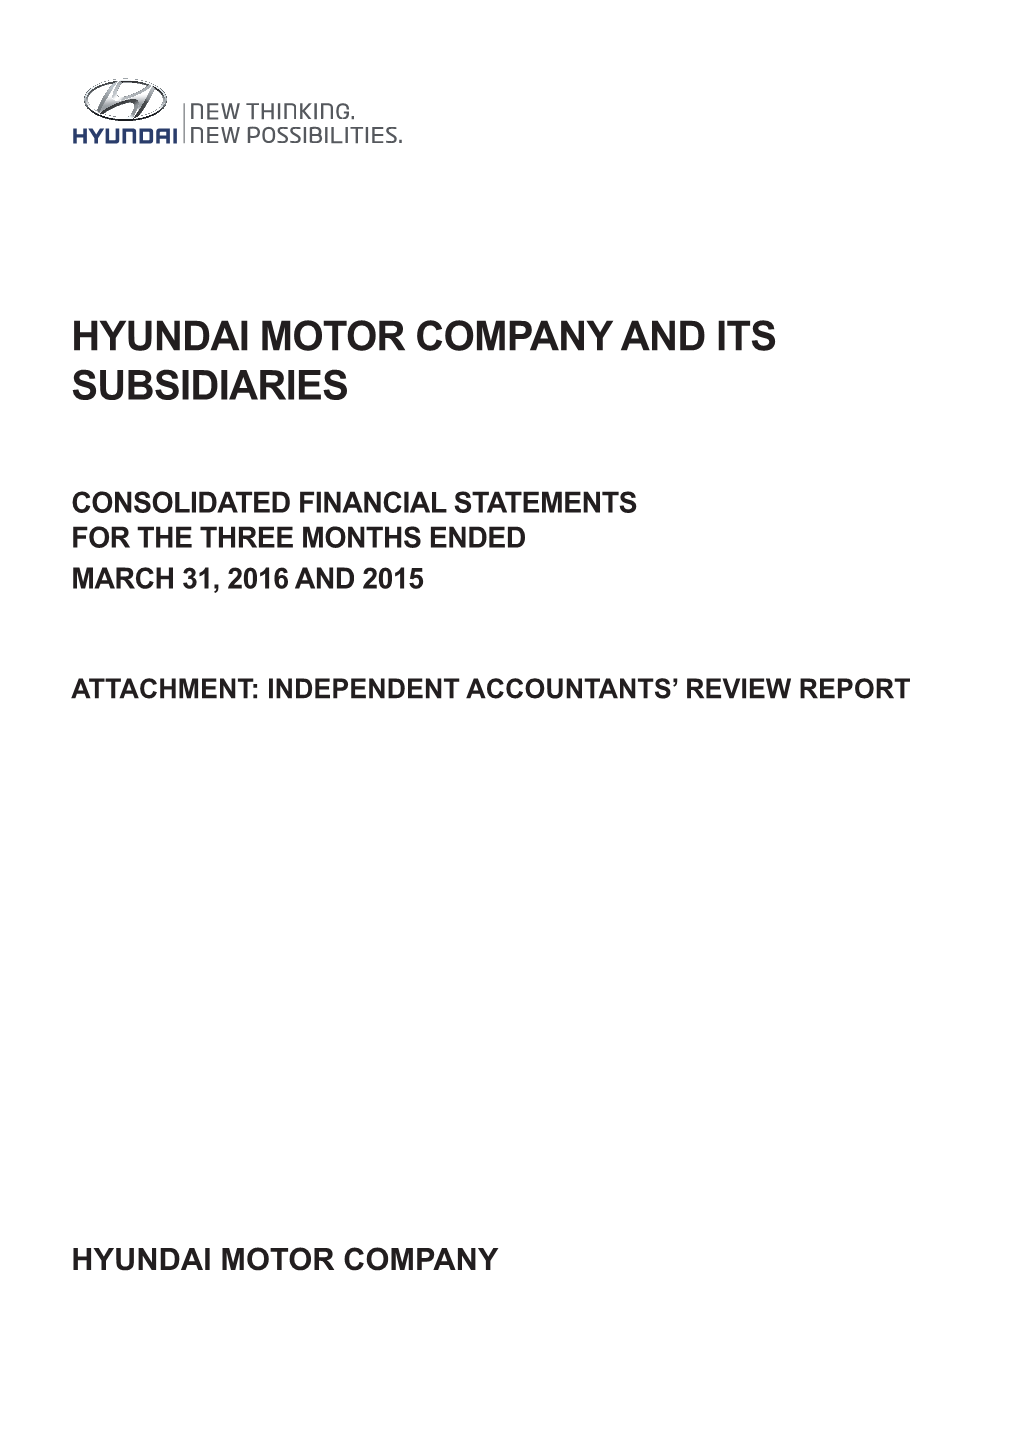 Hyundai Motor Company and Its Subsidiaries